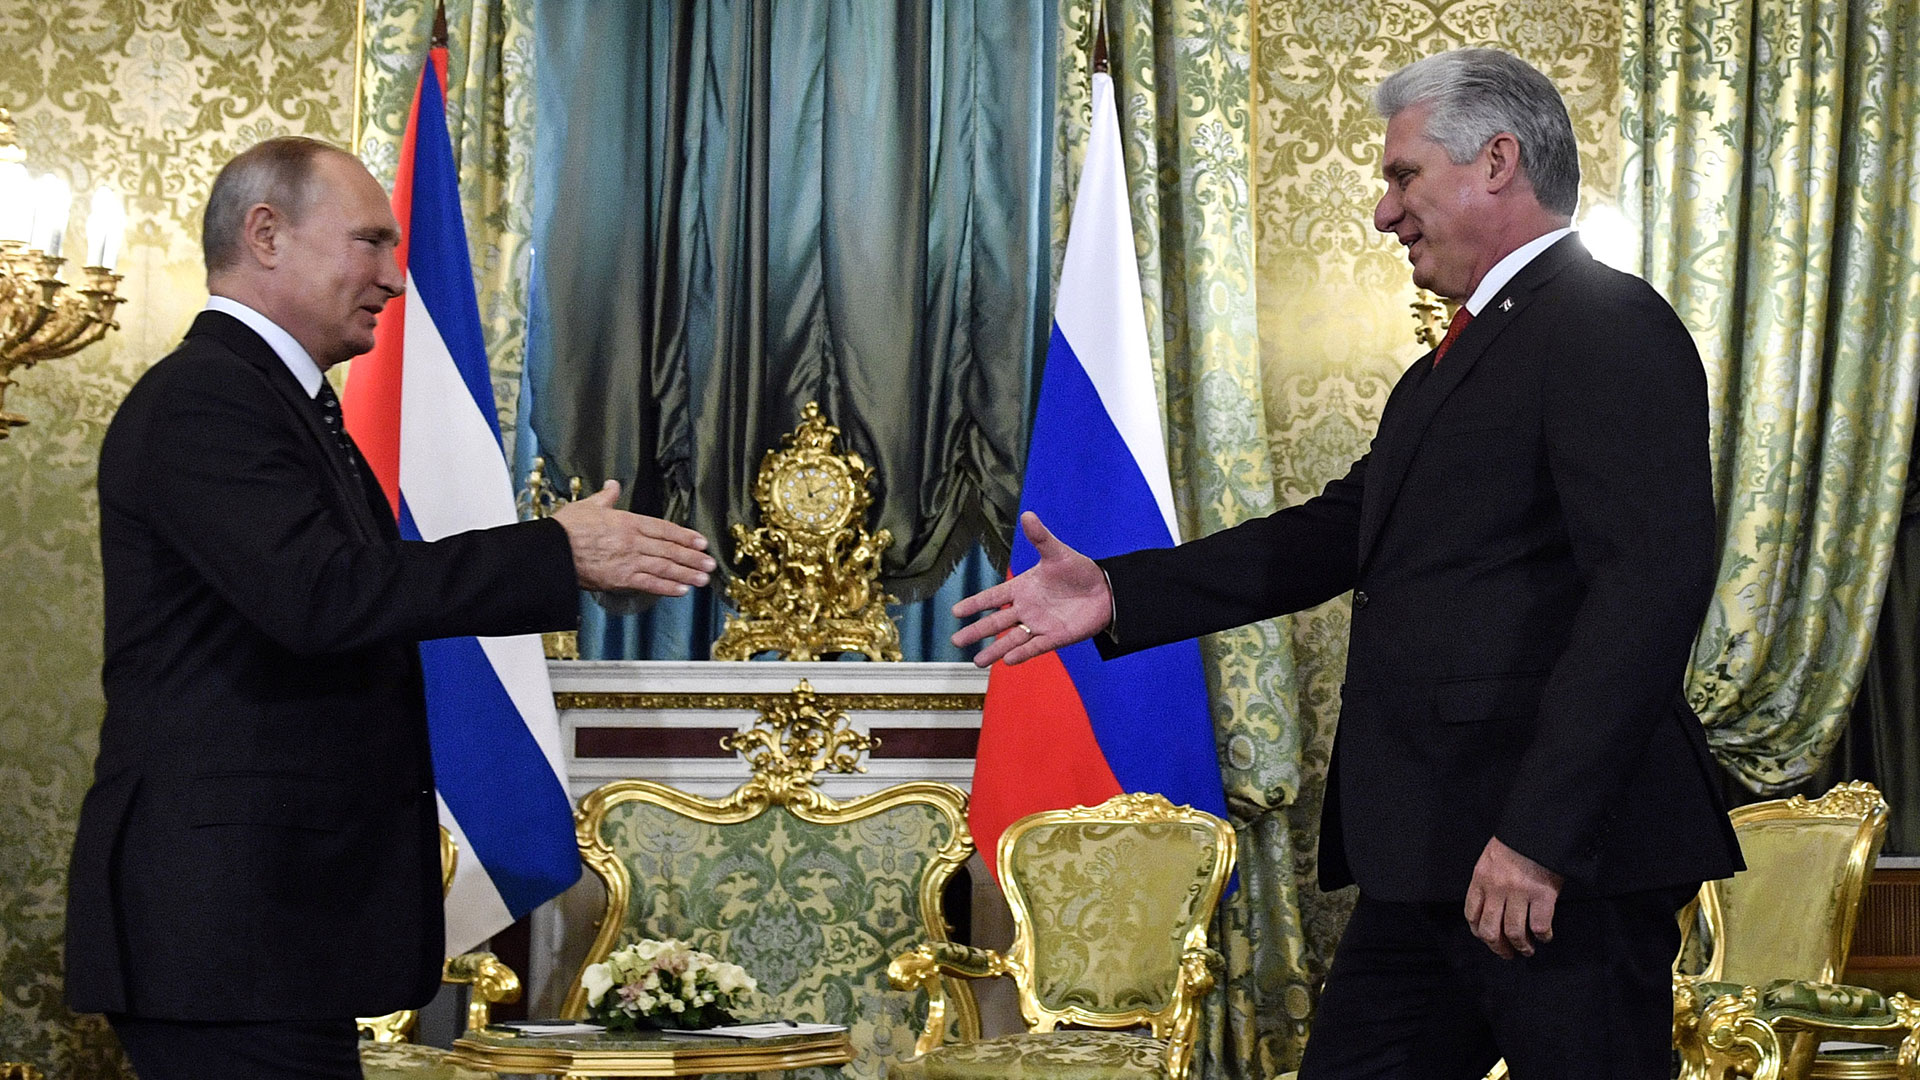 Rusia se acerca cada vez más a Cuba: el Kremlin impone al desesperado régimen castrista cambios legales para invertir